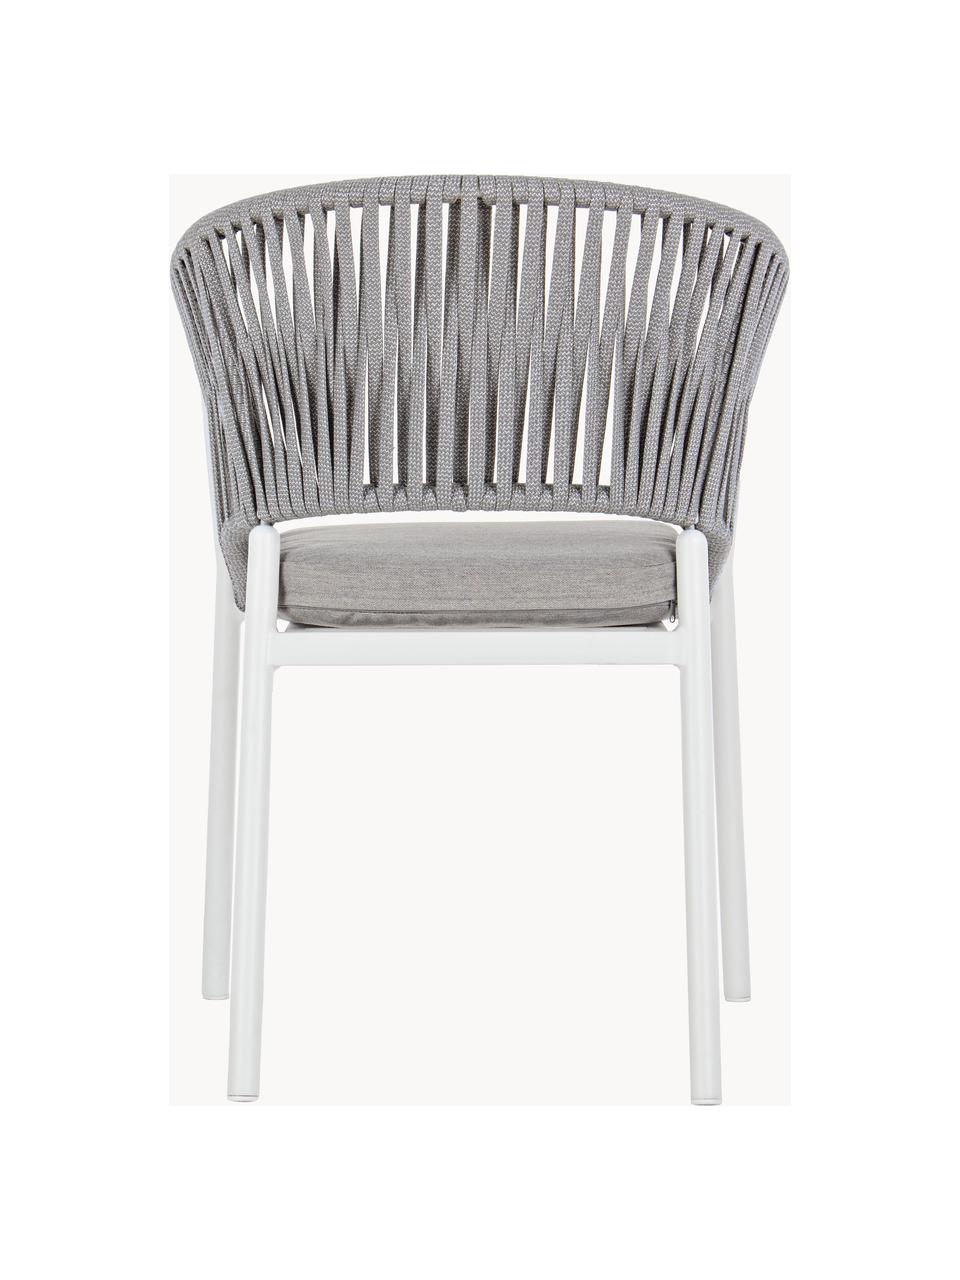 Chaise de jardin empilable Florencia, Tissu gris clair, blanc, larg. 60 x haut. 80 cm